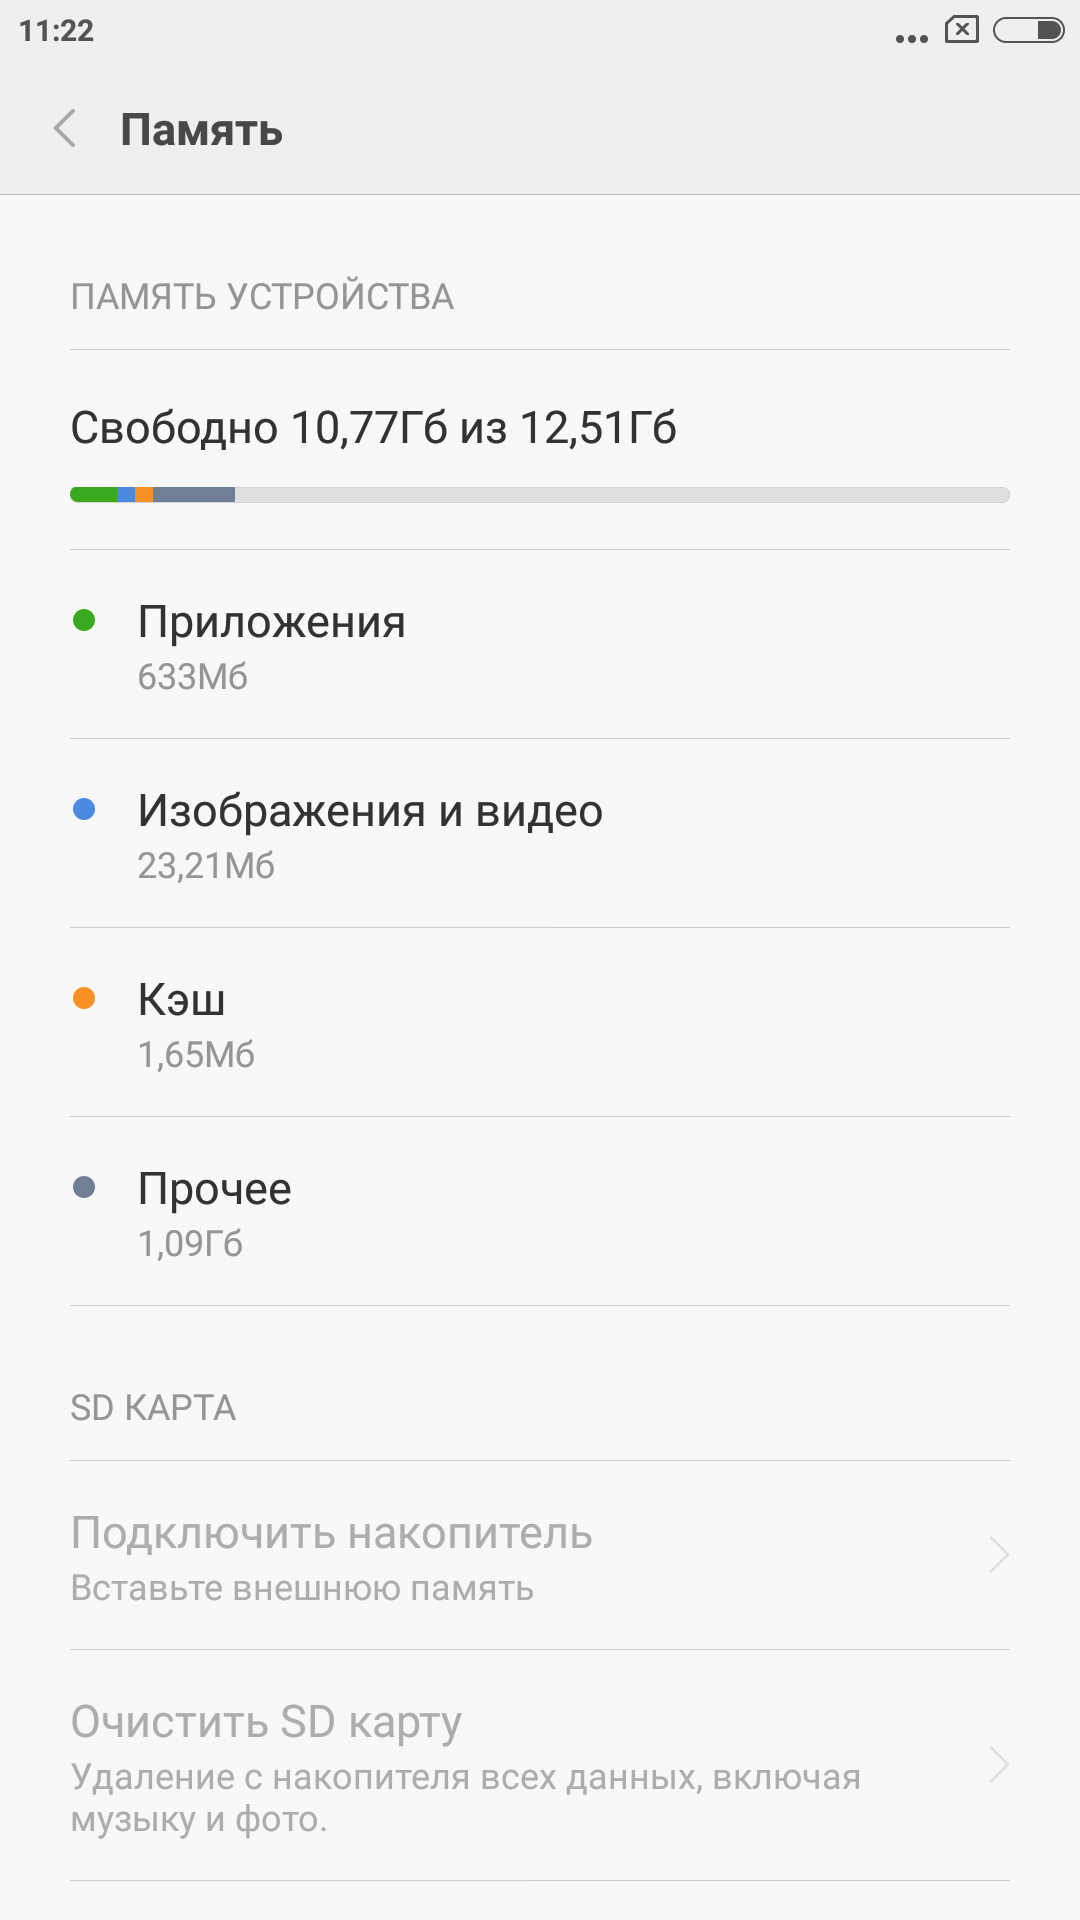 Обзор лучшего бюджетника 2015 года — Xiaomi Redmi Note 2 - 24